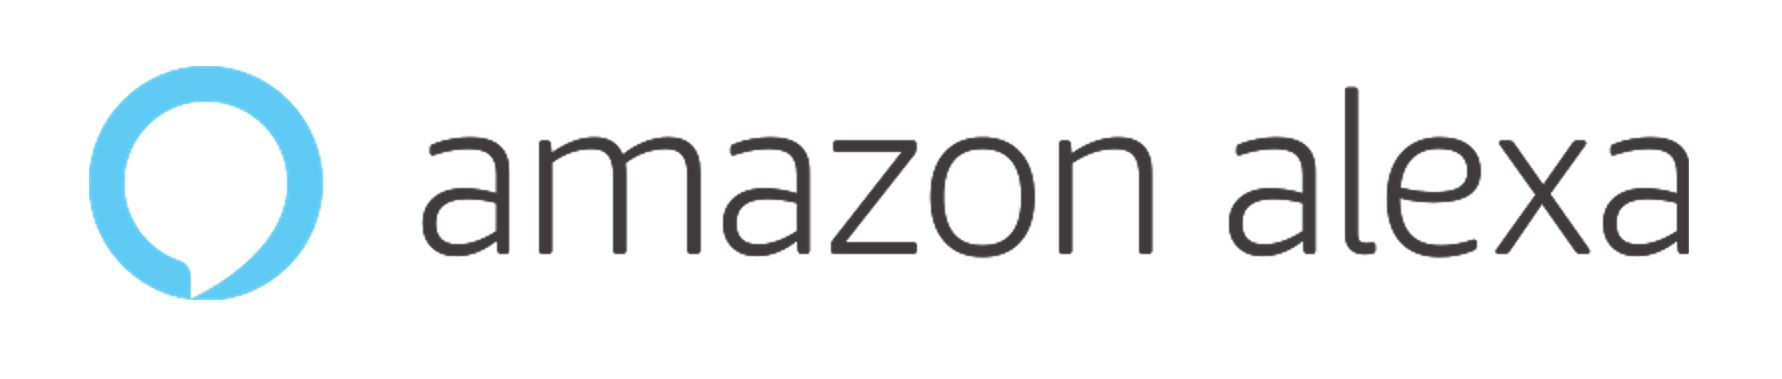 Amazon_Alexa_long.JPG (40 KB)